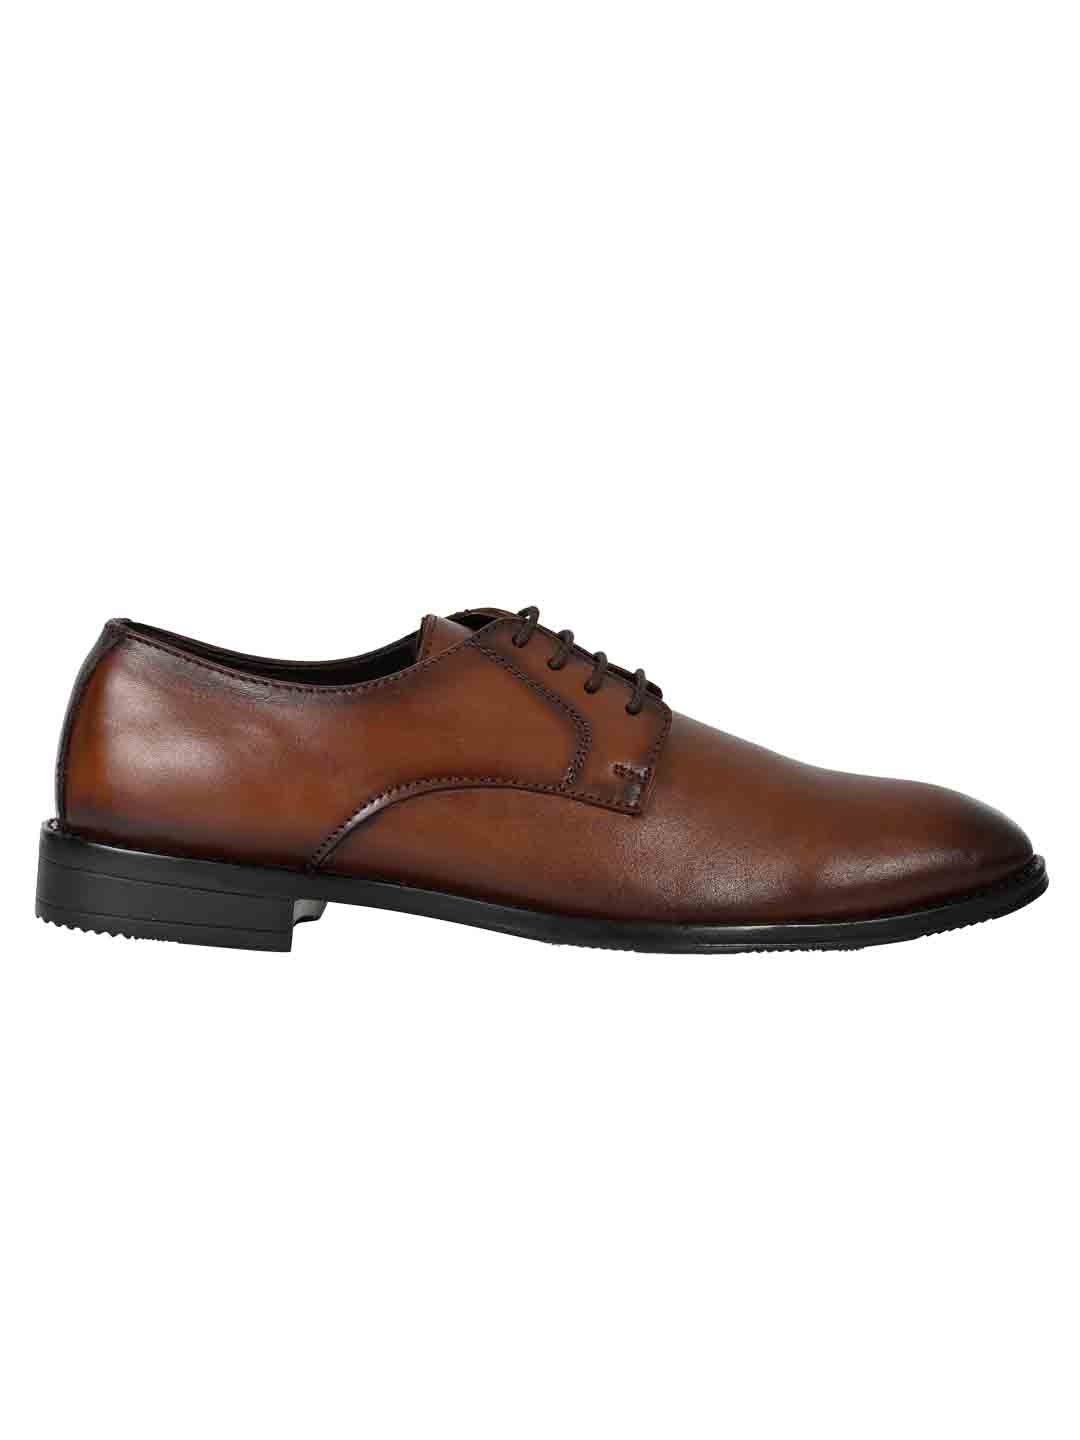 Footwear, Men Footwear, Brown Formal Shoes